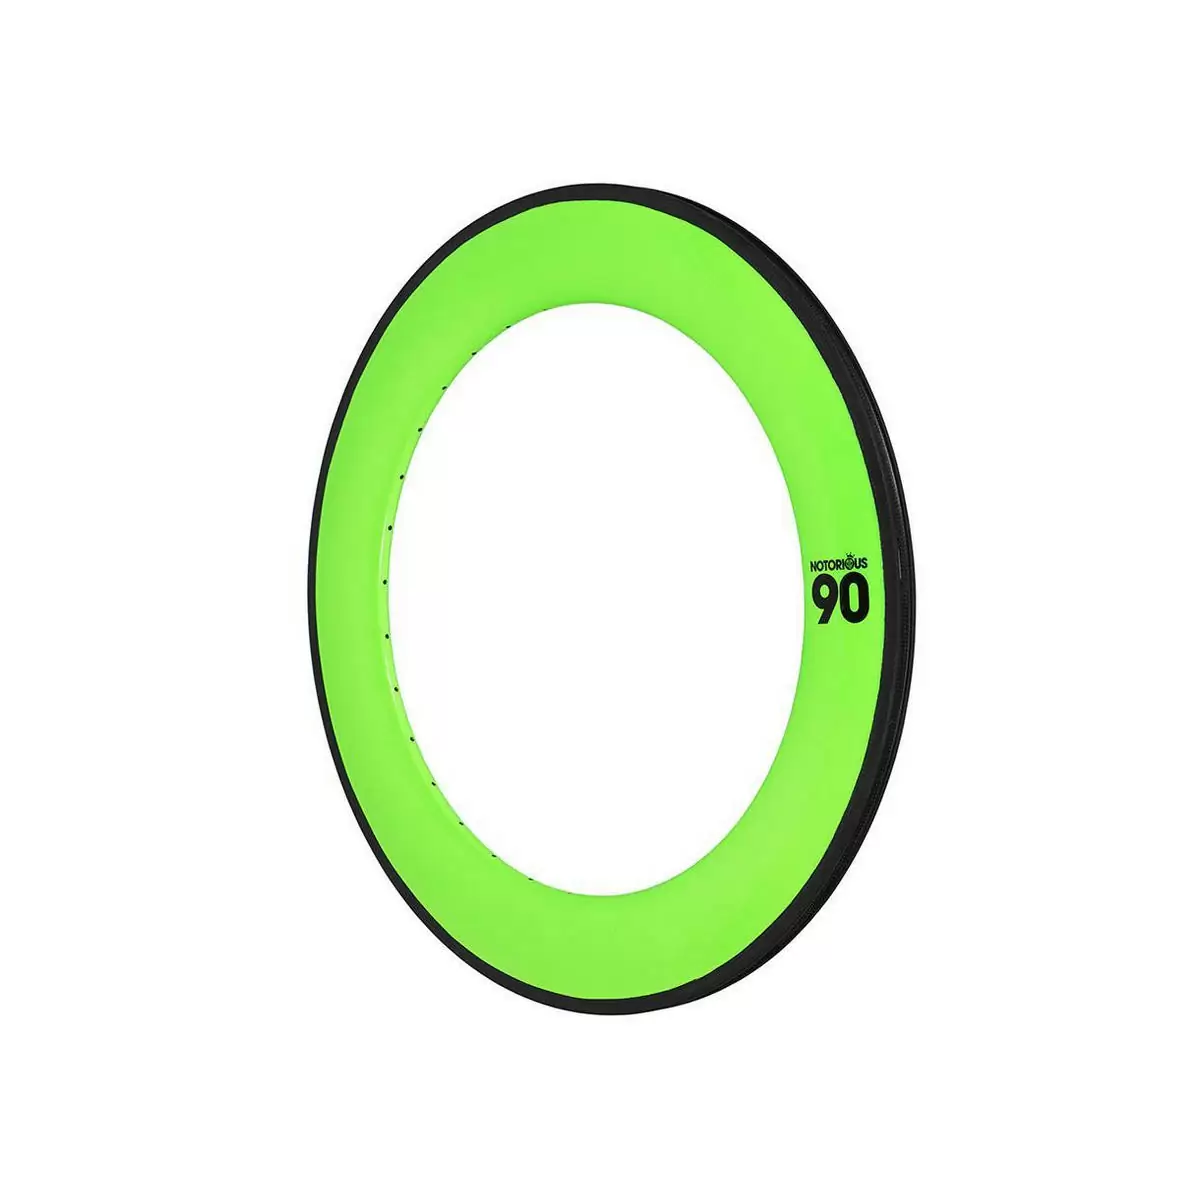 cerchio notorious 90 700c carbon 32h msw verde fluo - image